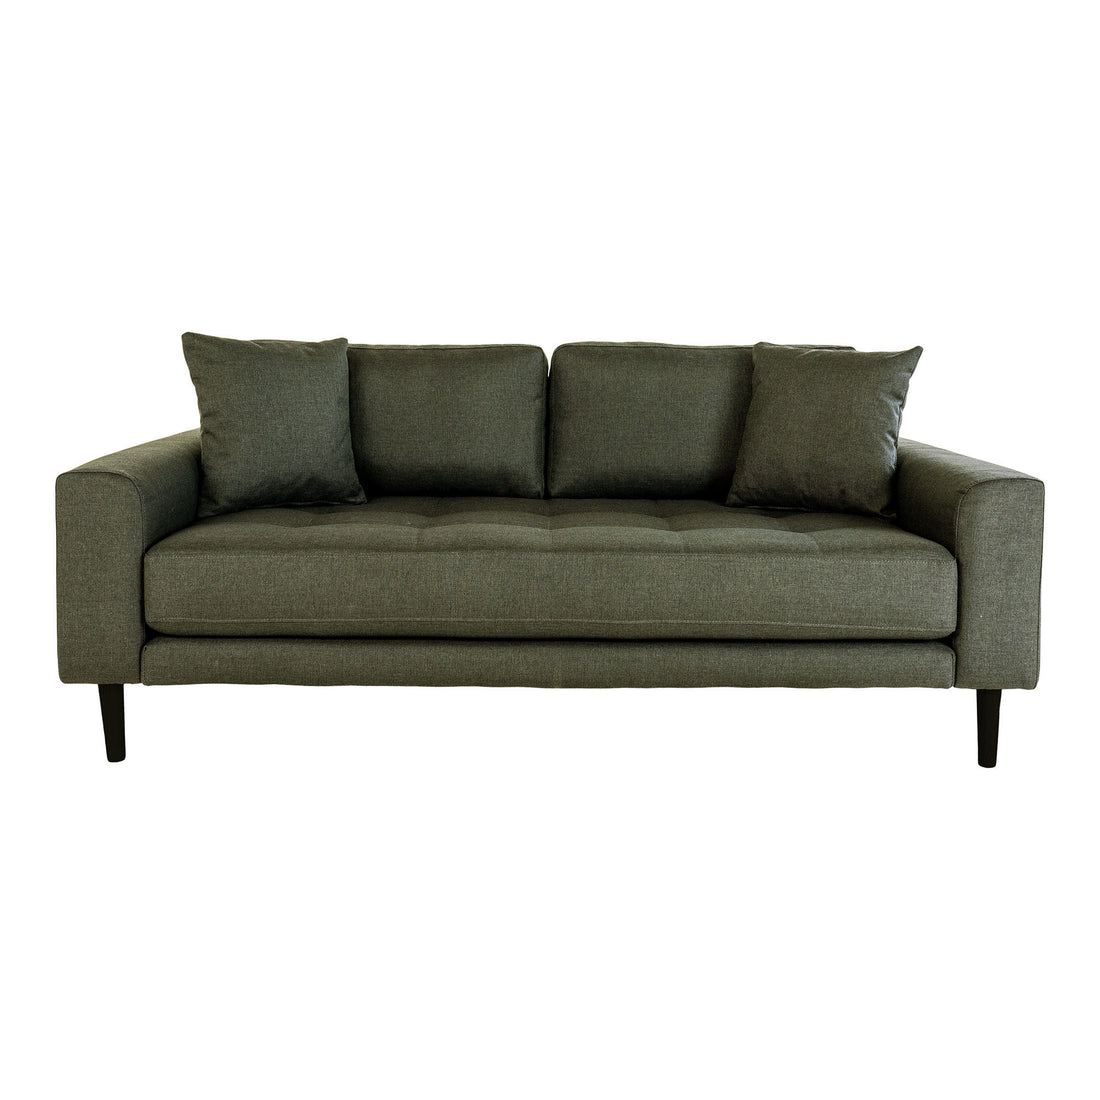 Lido 2,5 -Person -Sofa - 2,5 -Personen -Sofa in Olivgrün mit zwei Kissen und schwarzen Holzbeinen, HN1020 - 1 - PCs